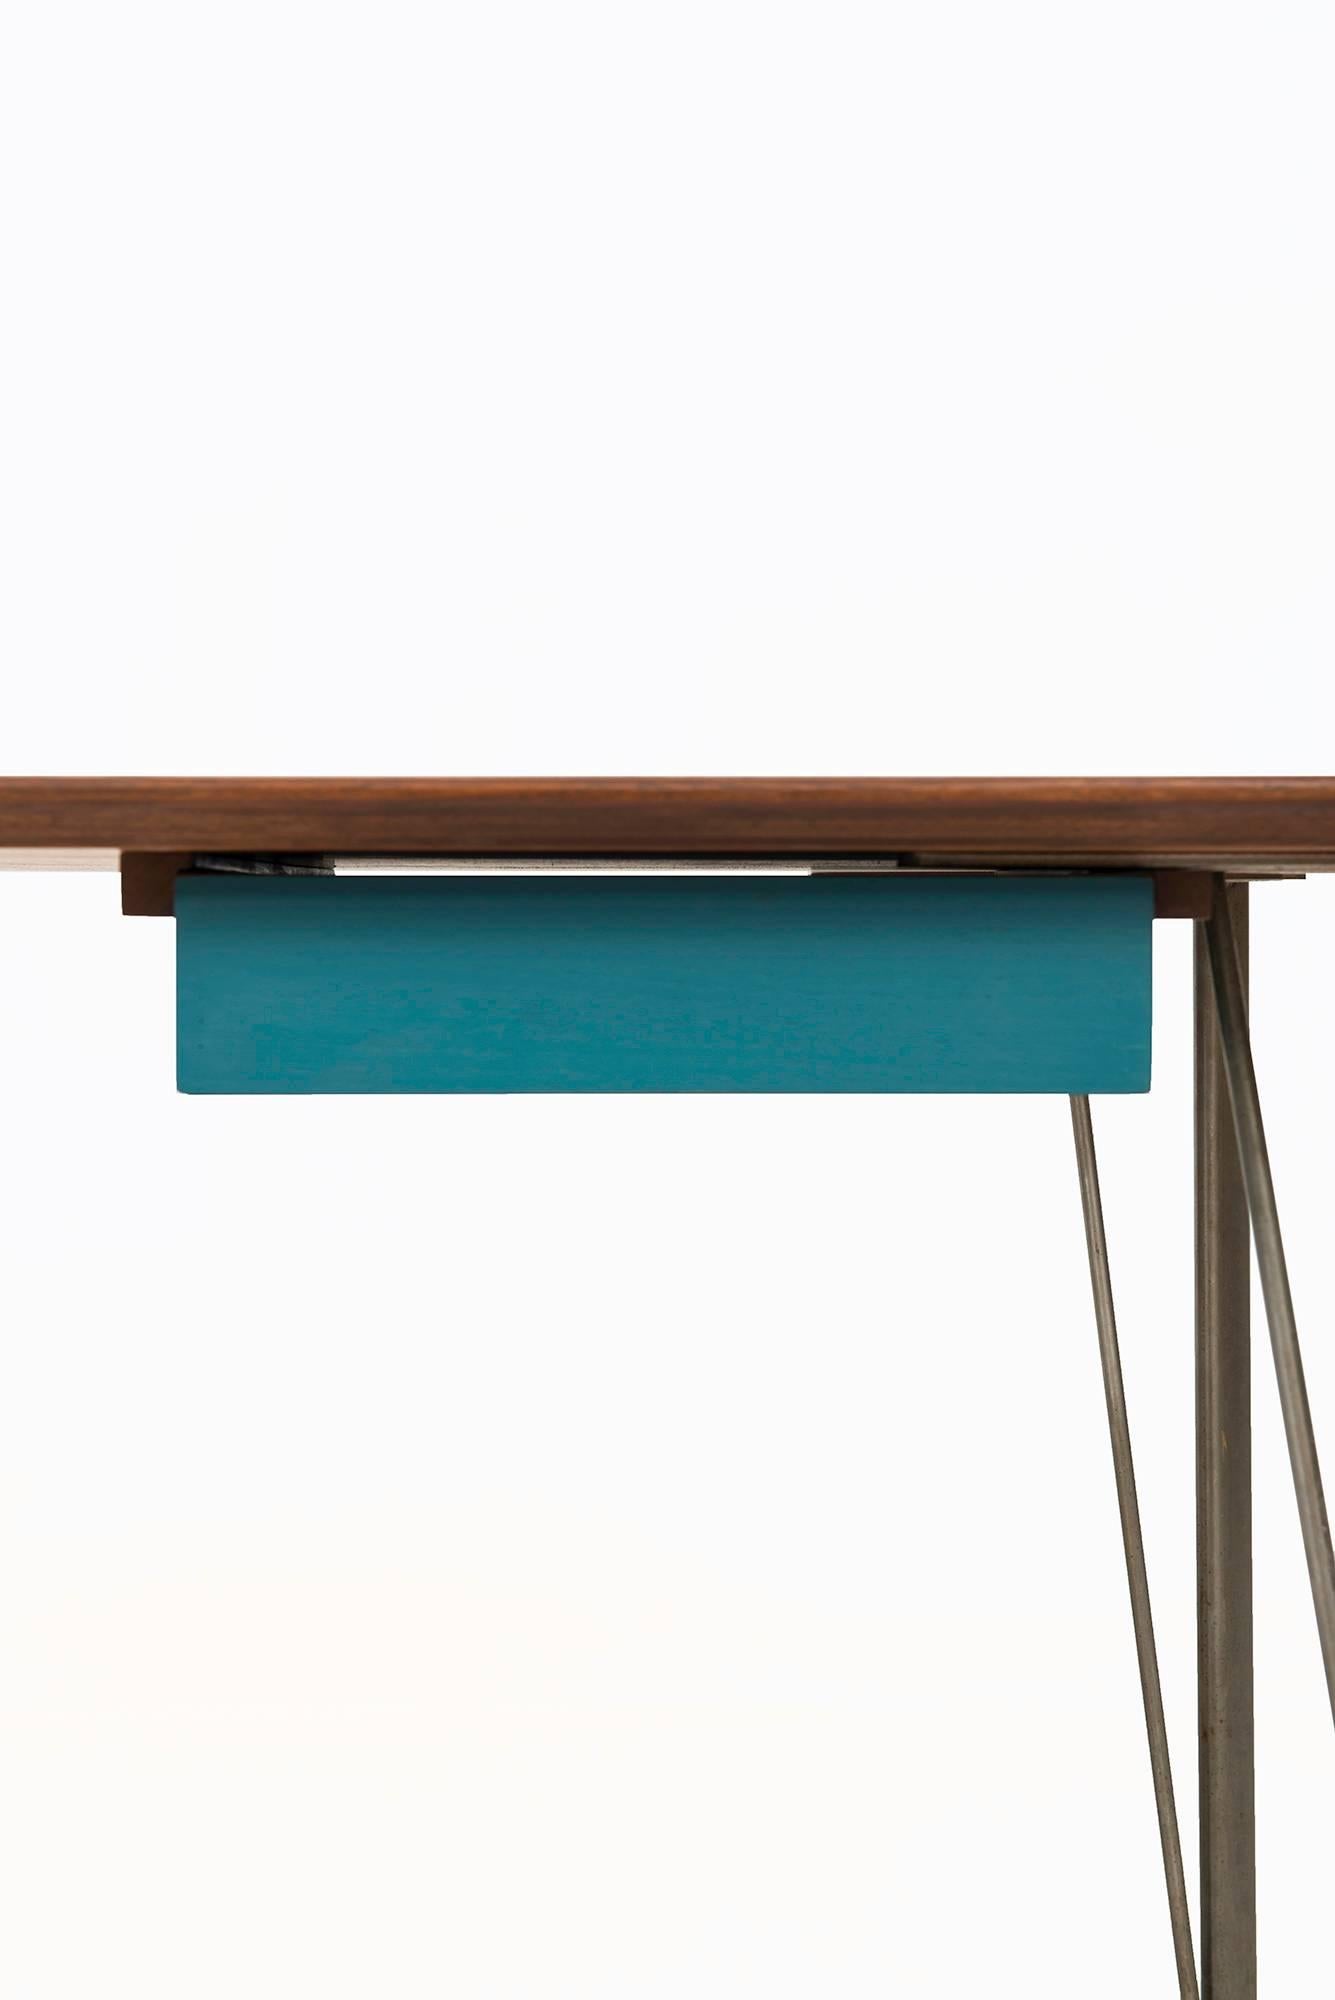 Rare desk designed by Arne Jacobsen. Produced by Fritz Hansen in Denmark.